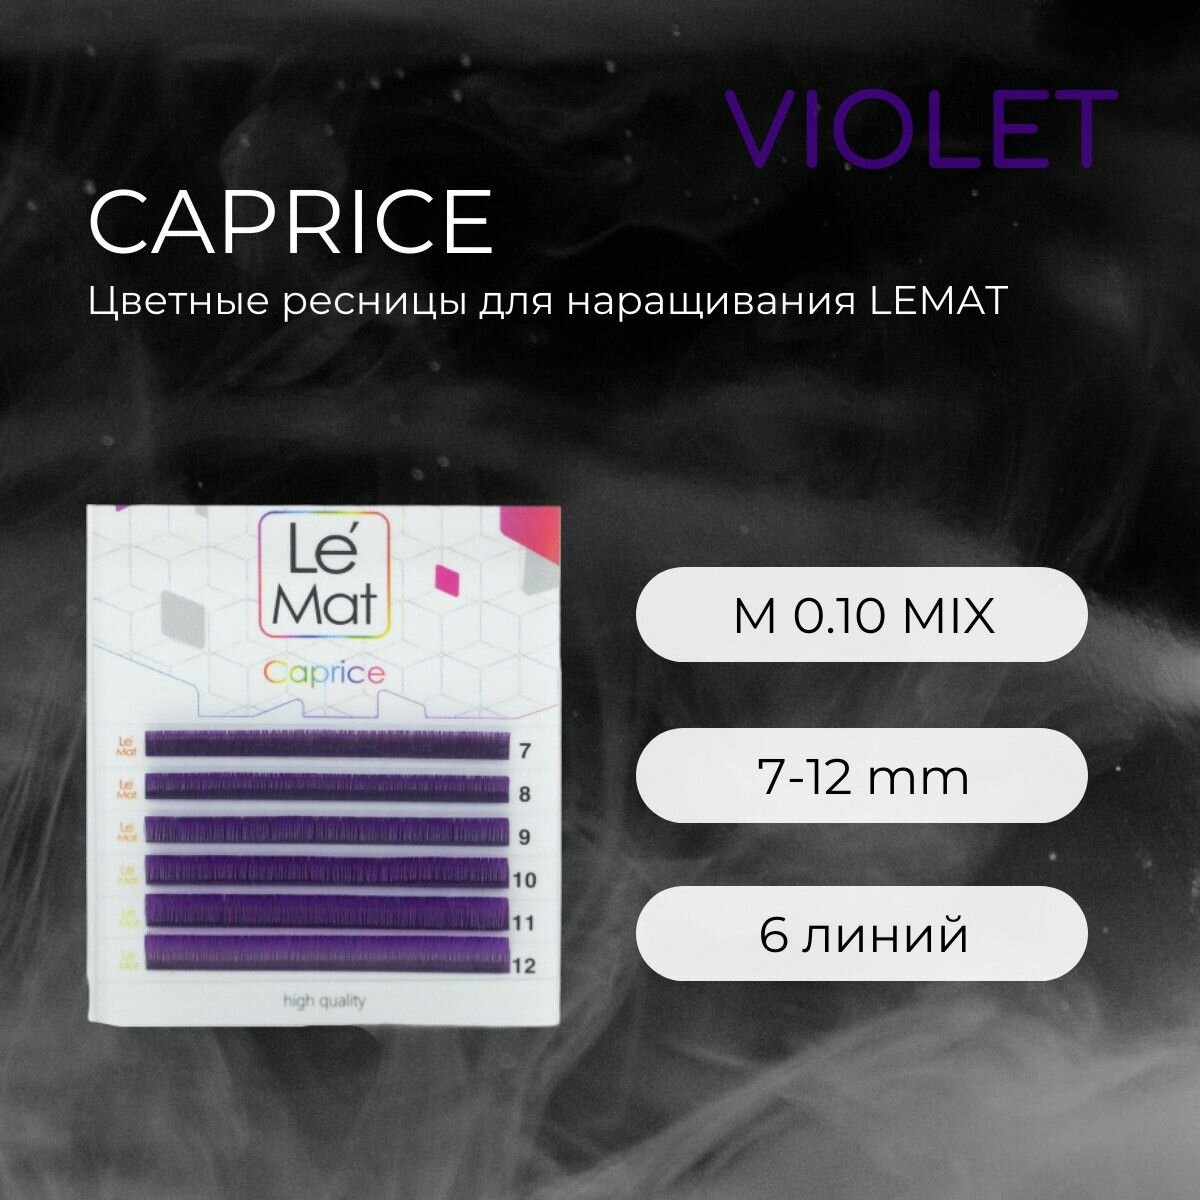 Ресницы для наращивания VIOLET M 0.10 7-12 mm "Caprice" 6 линий mix Le Maitre / Le Mat (Ле Мат / фиолетовый микс цветные)